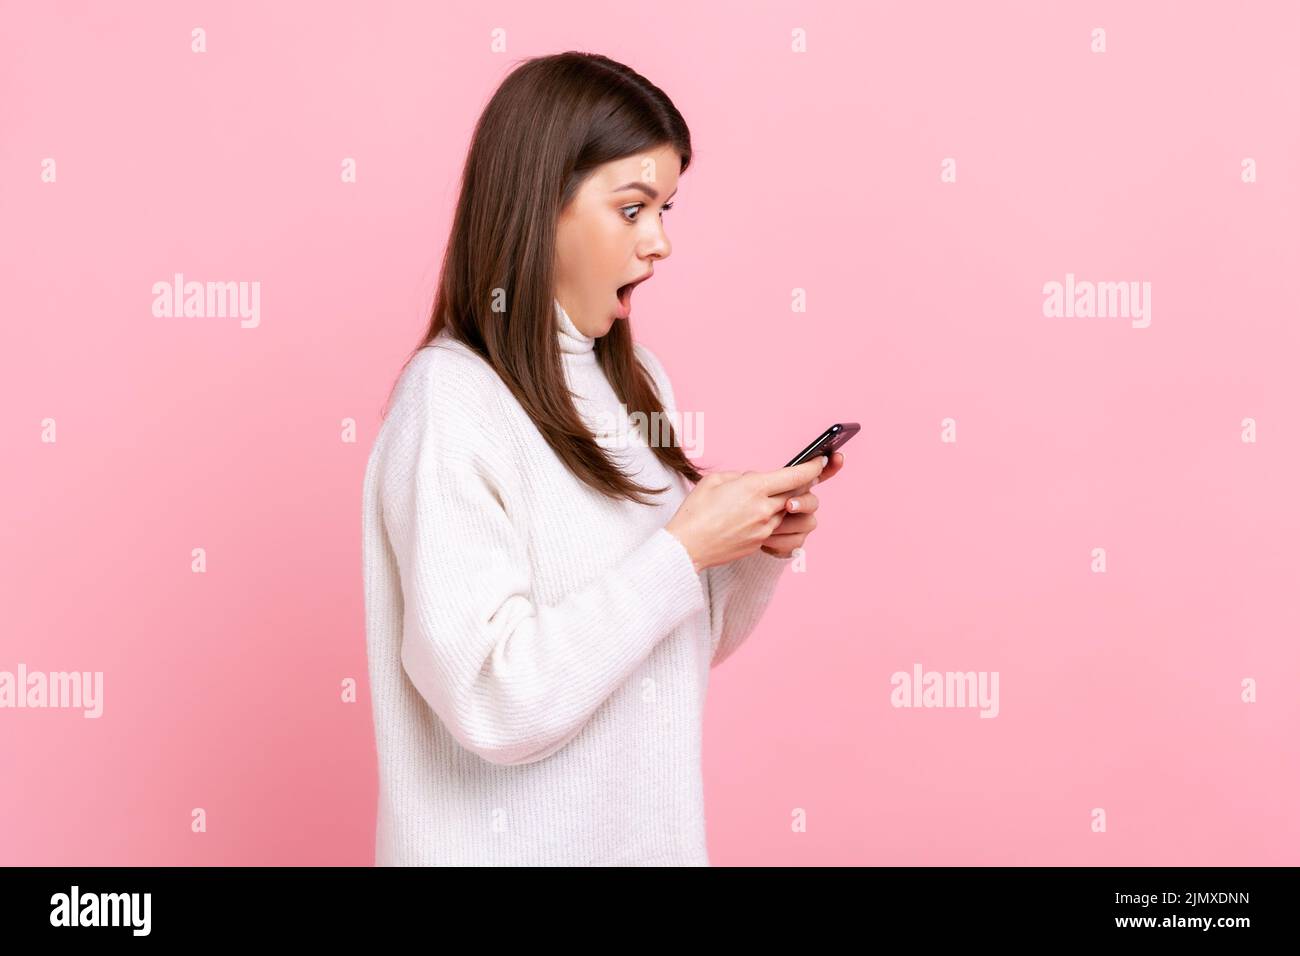 Seitenansicht Porträt der schockierten Bloggerin im Stehen, verwenden Sie Smartphone mit staunendem Gesicht, geöffneten Mund, tragen weißen lässigen Stil Pullover. Innenaufnahme des Studios isoliert auf rosa Hintergrund. Stockfoto